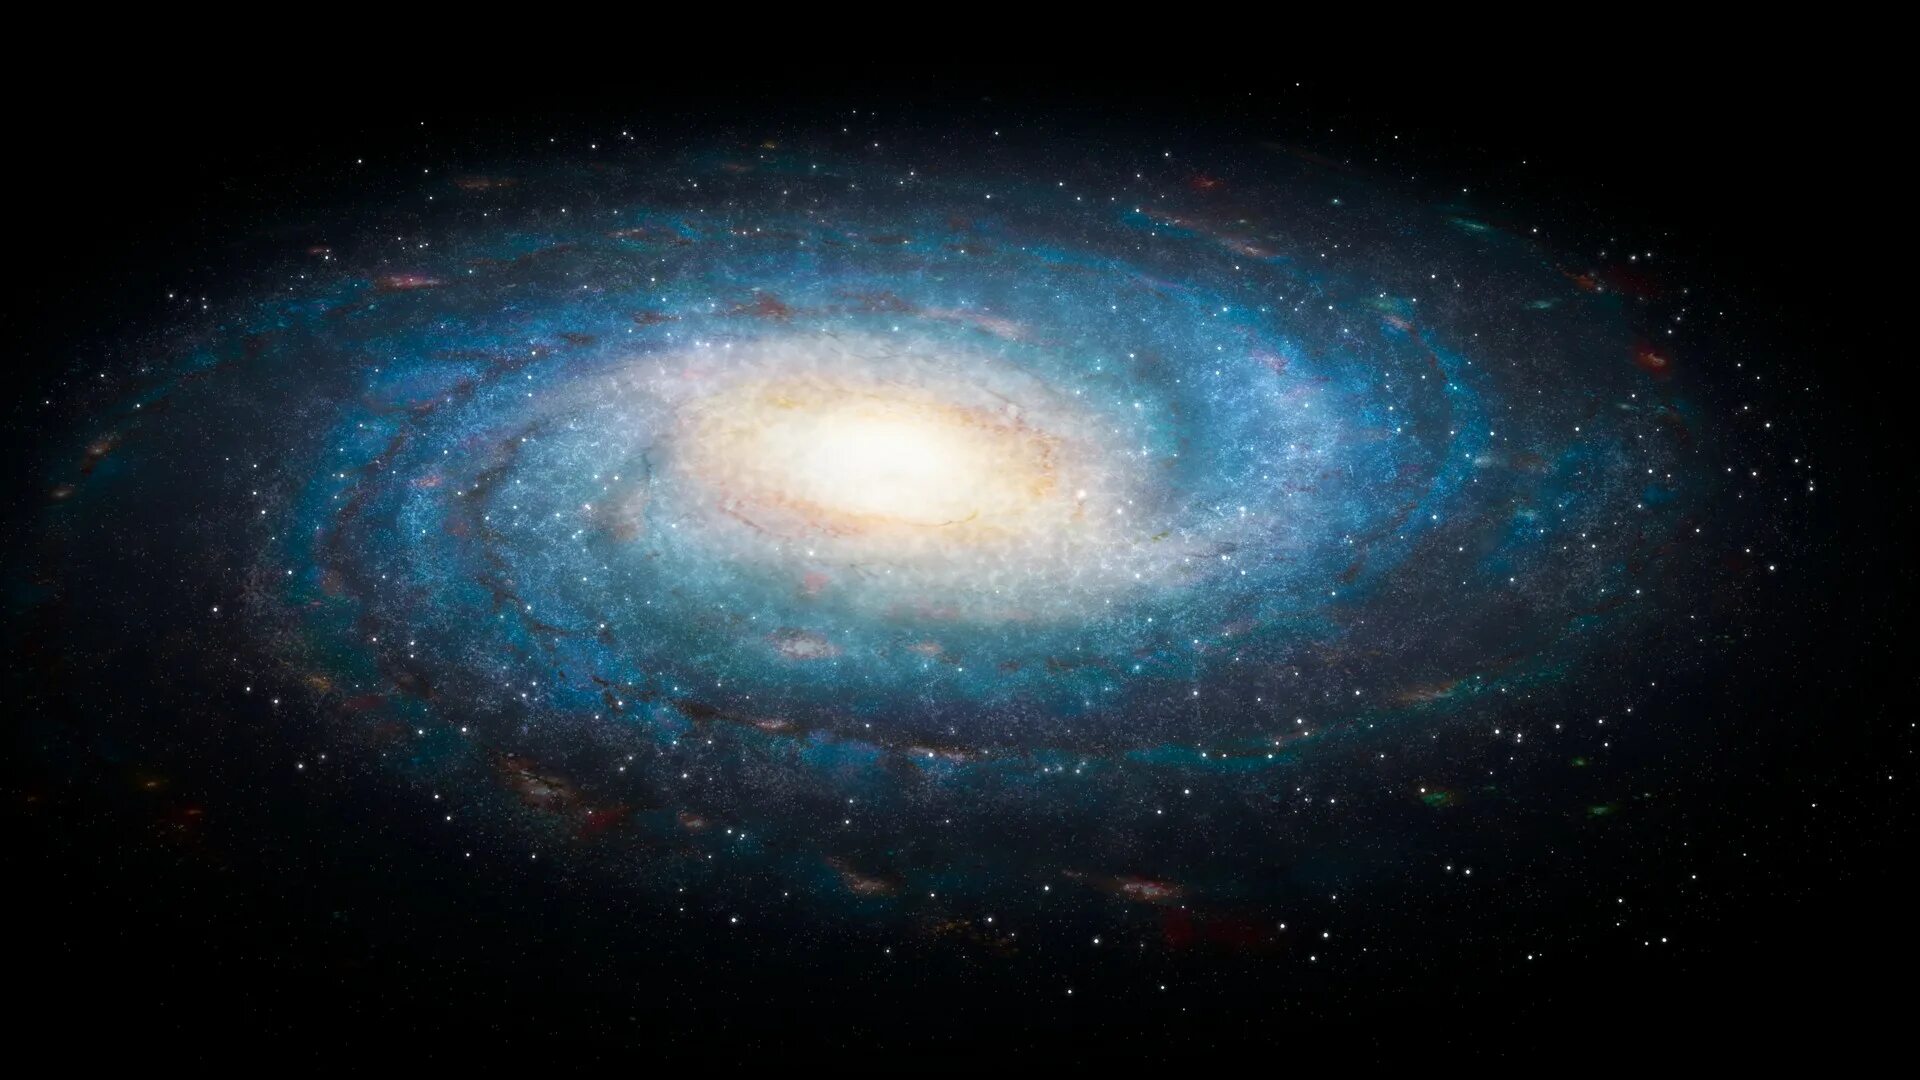 Source space. Наша Галактика Млечный путь. Галактика Млечный путь Солнечная система. Милки Вэй Галактика. Спиралевидная Галактика Млечный путь.